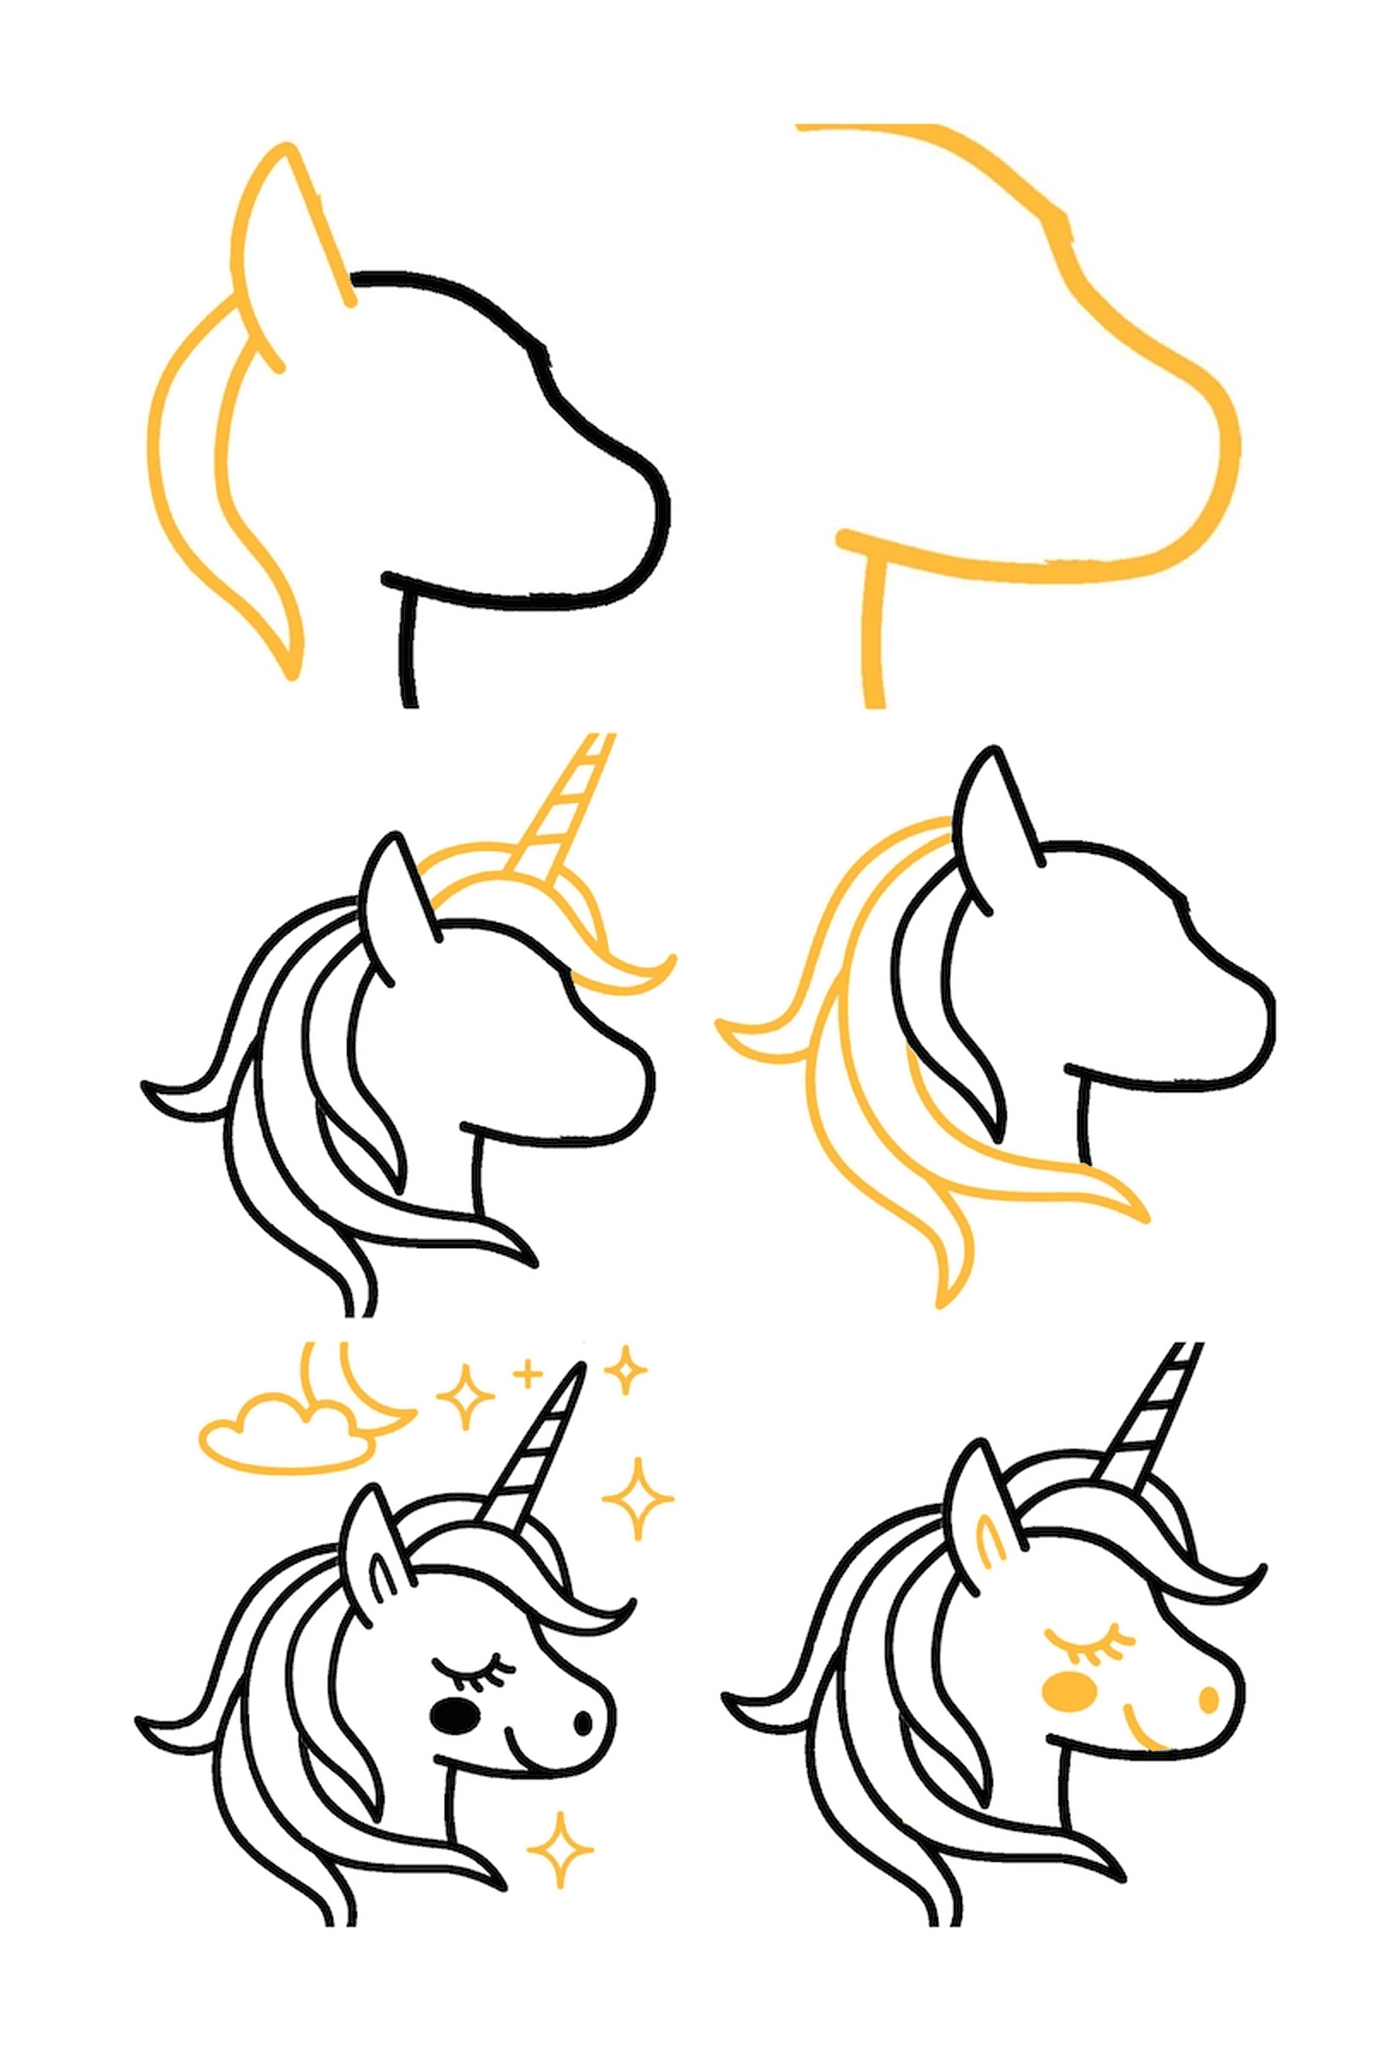 tuto comment dessiner licorne kawaii simple tete de licorne aux contours noirs avec etoiles nuages